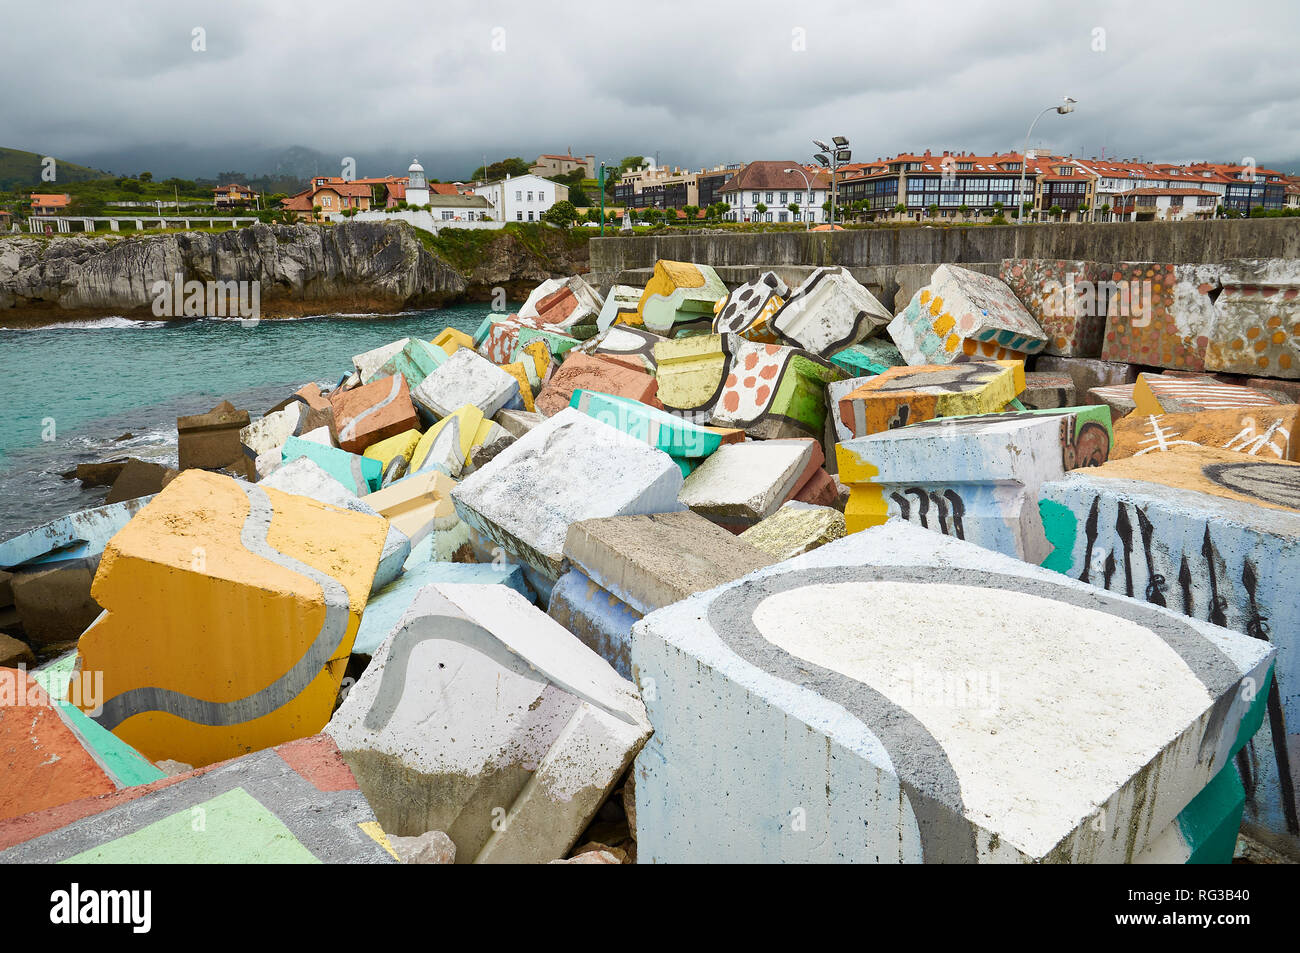 Cubos de la Memoria, intervention artistique d'Agustín Ibarrola de blocs de béton peints avec ville à l'arrière dans le port de Llanes (Asturies, Espagne) Banque D'Images